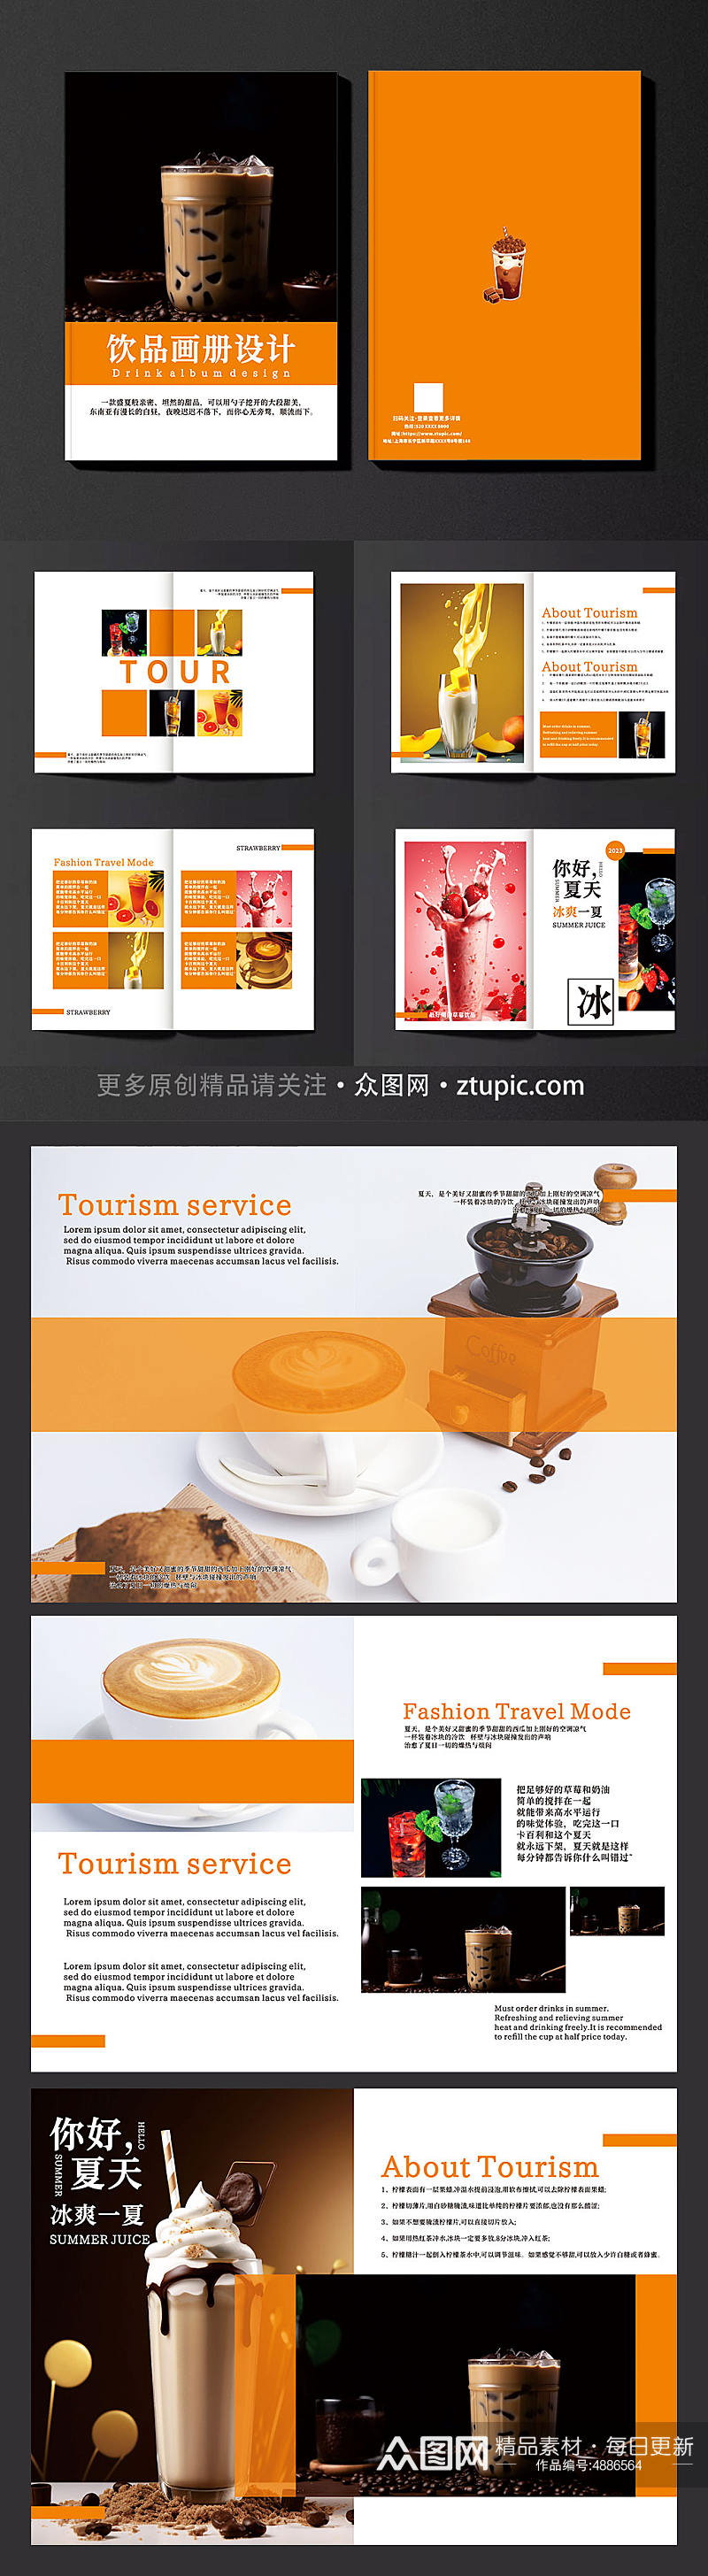 创意奶茶店饮料饮品果汁产品宣传画册素材